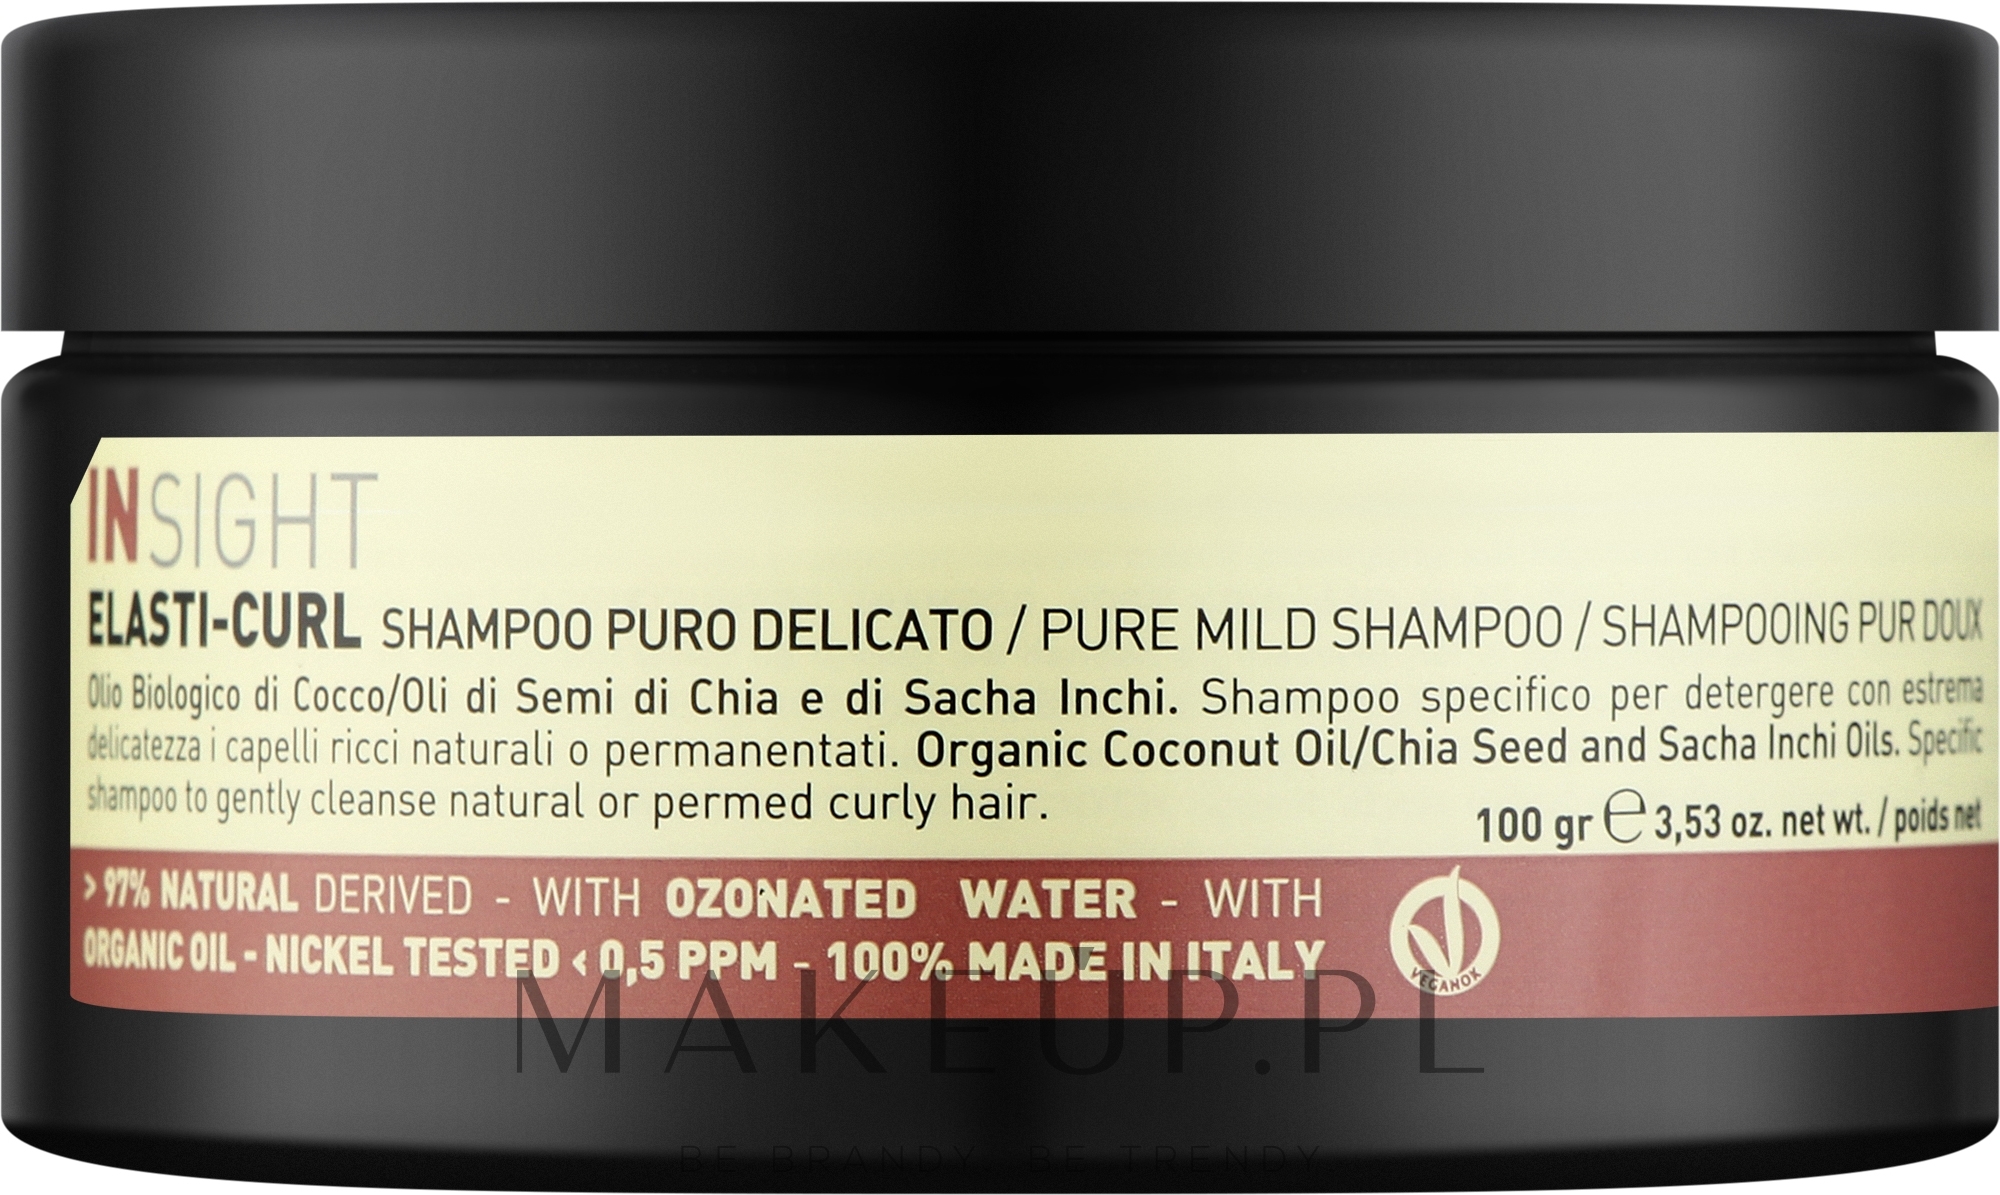 Łagodny szampon do włosów kręconych - Insight Elasti-Curl Pure Mild Shampoo  — Zdjęcie 100 g